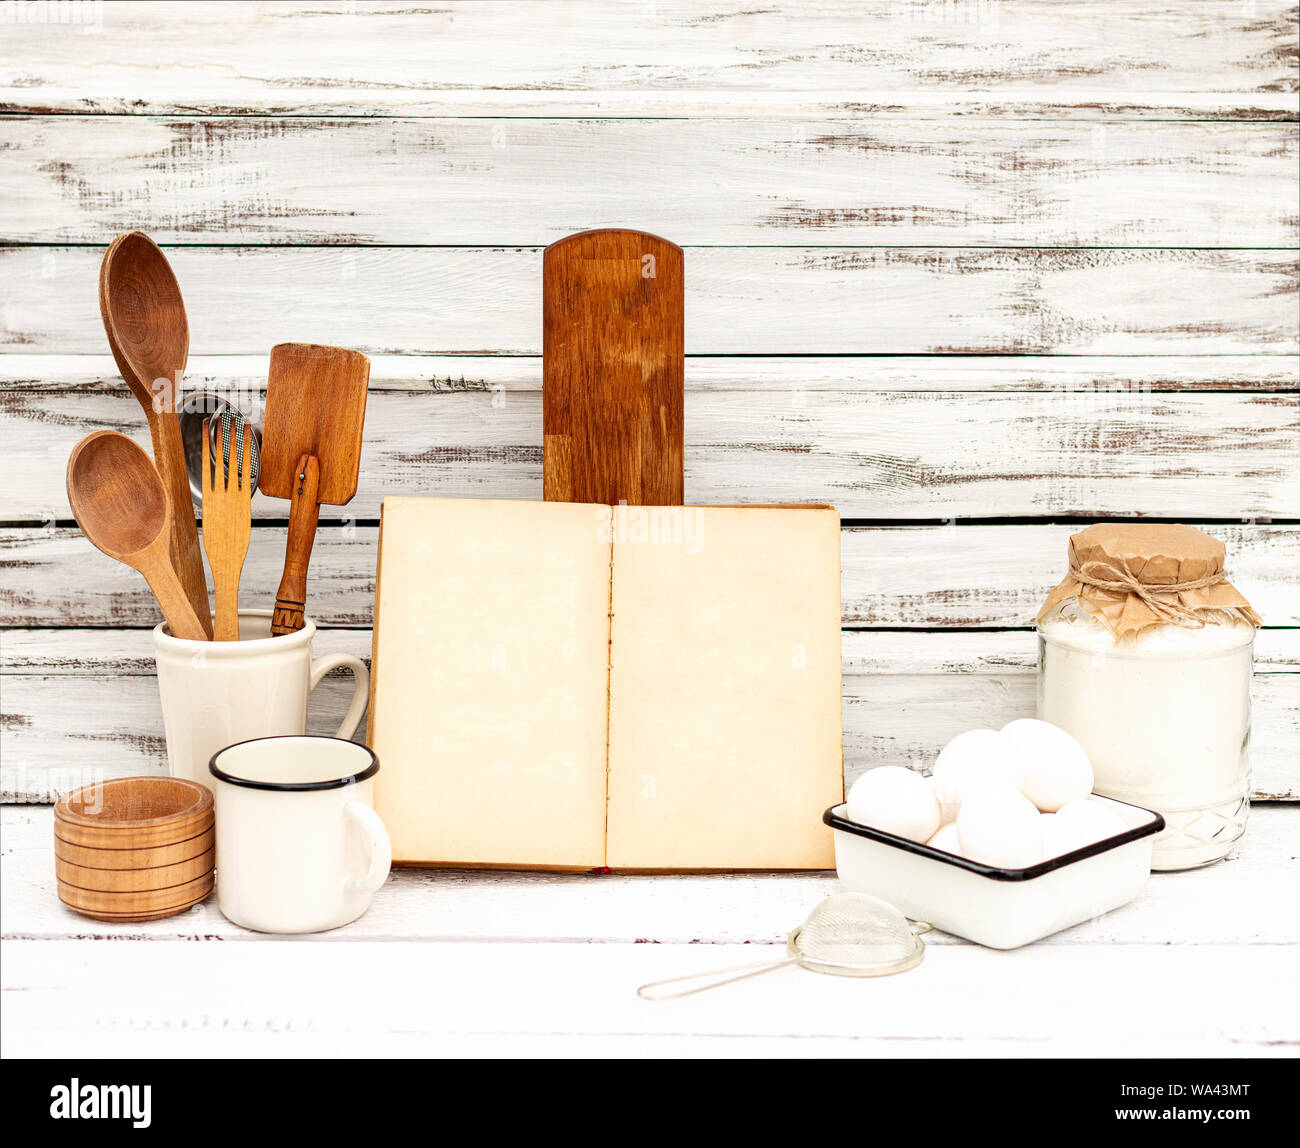 Jahrgang alte backen Geschirr und Rezeptbuch auf weißem Holz- Hintergrund. Selektive konzentrieren. Stockfoto